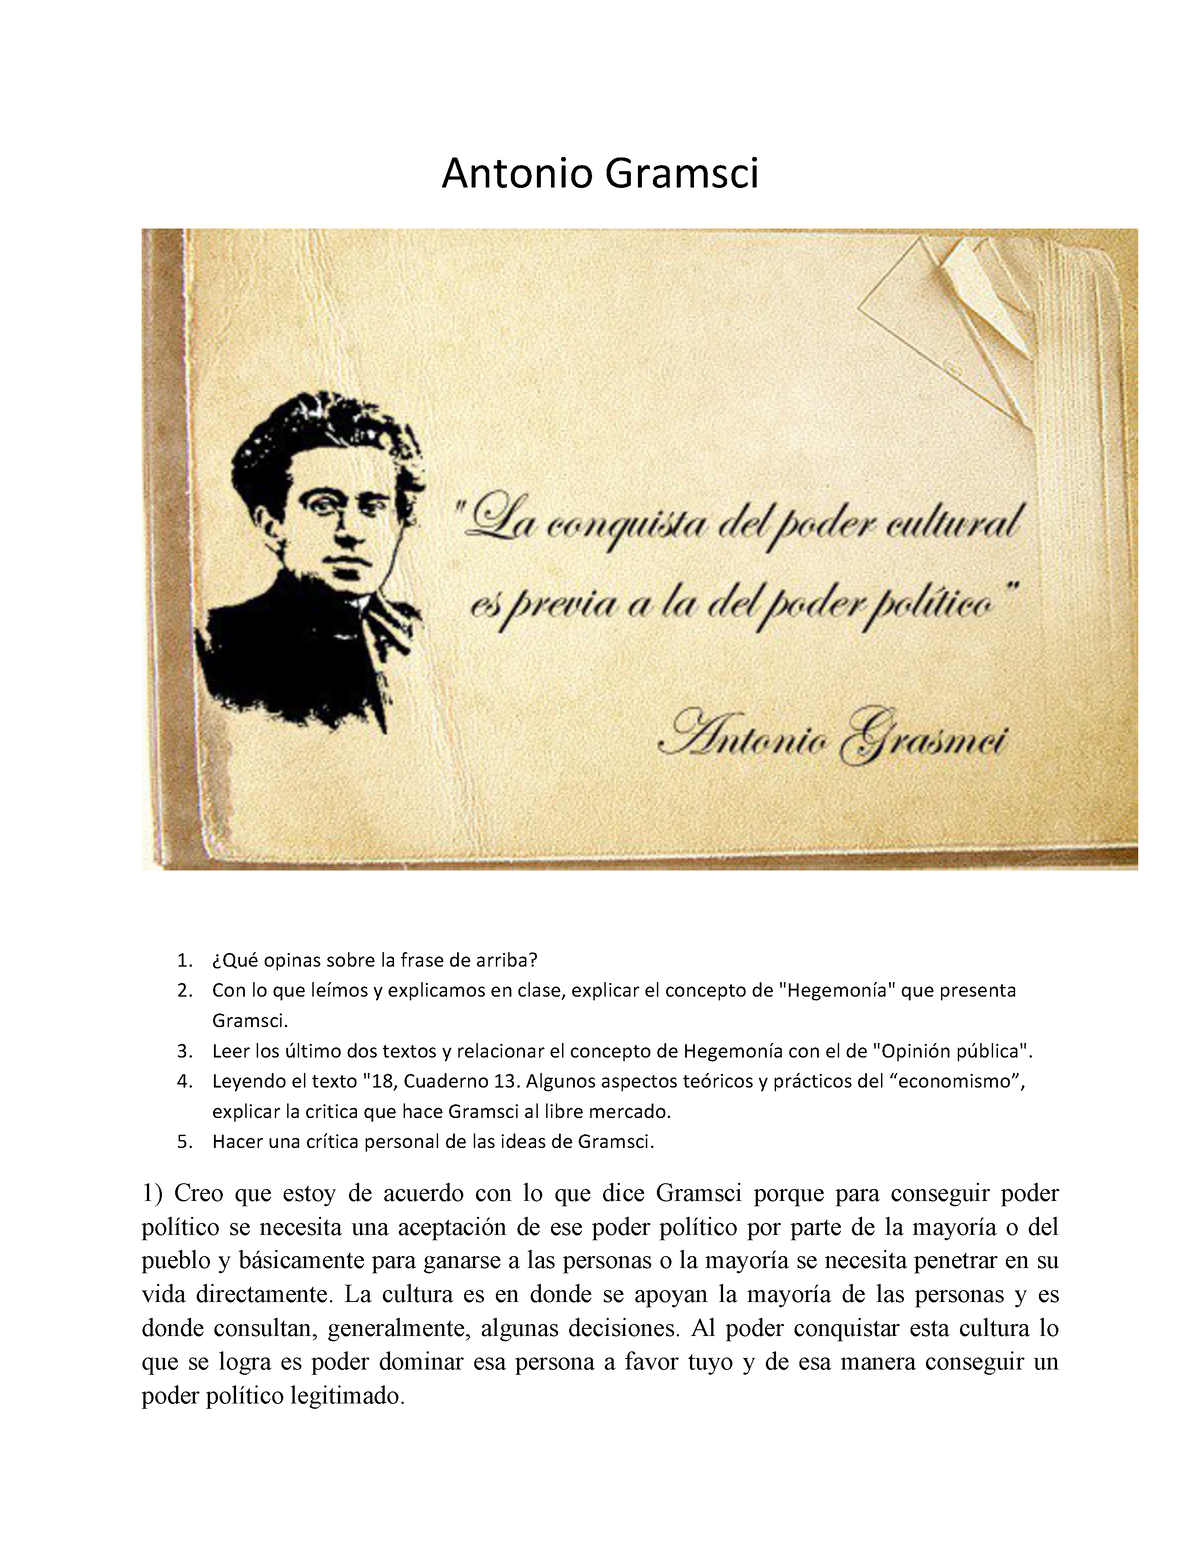 TP Gramsci Fermínxx alla alal alalalal - Antonio Gramsci ¿Qué opinas sobre  la frase de arriba? Con - Studocu